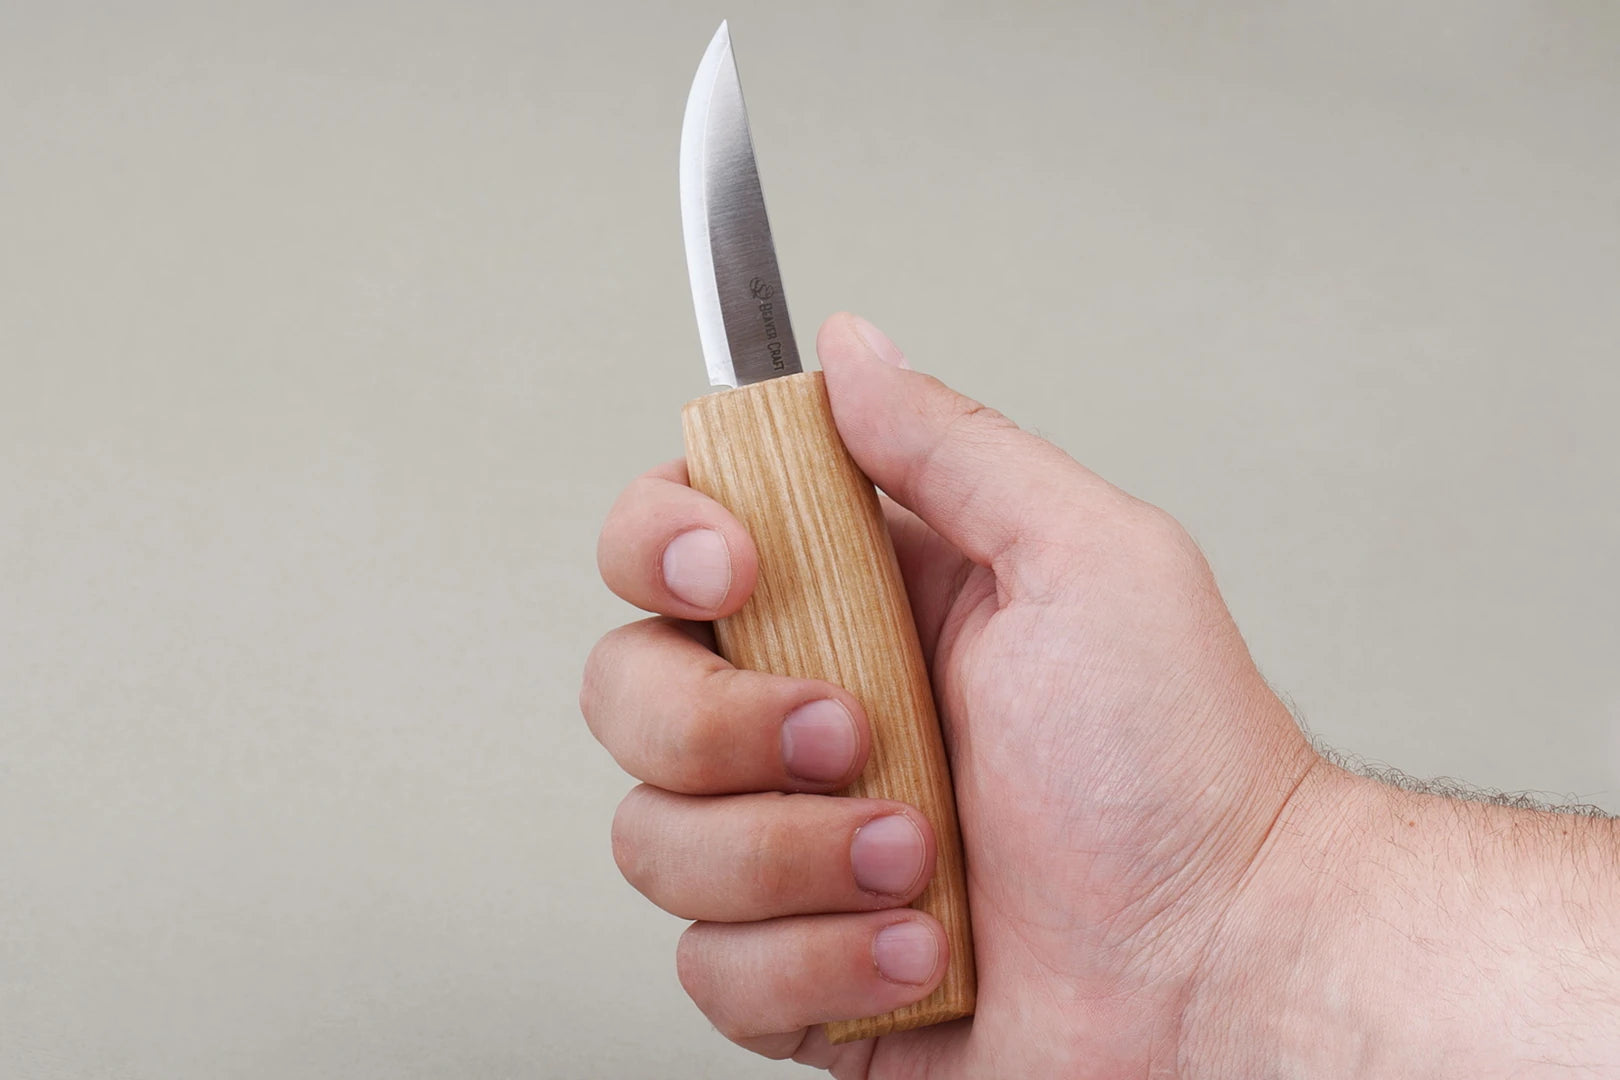 Best small whittling knife for beginners - BeaverCraft – BeaverCraft Tools